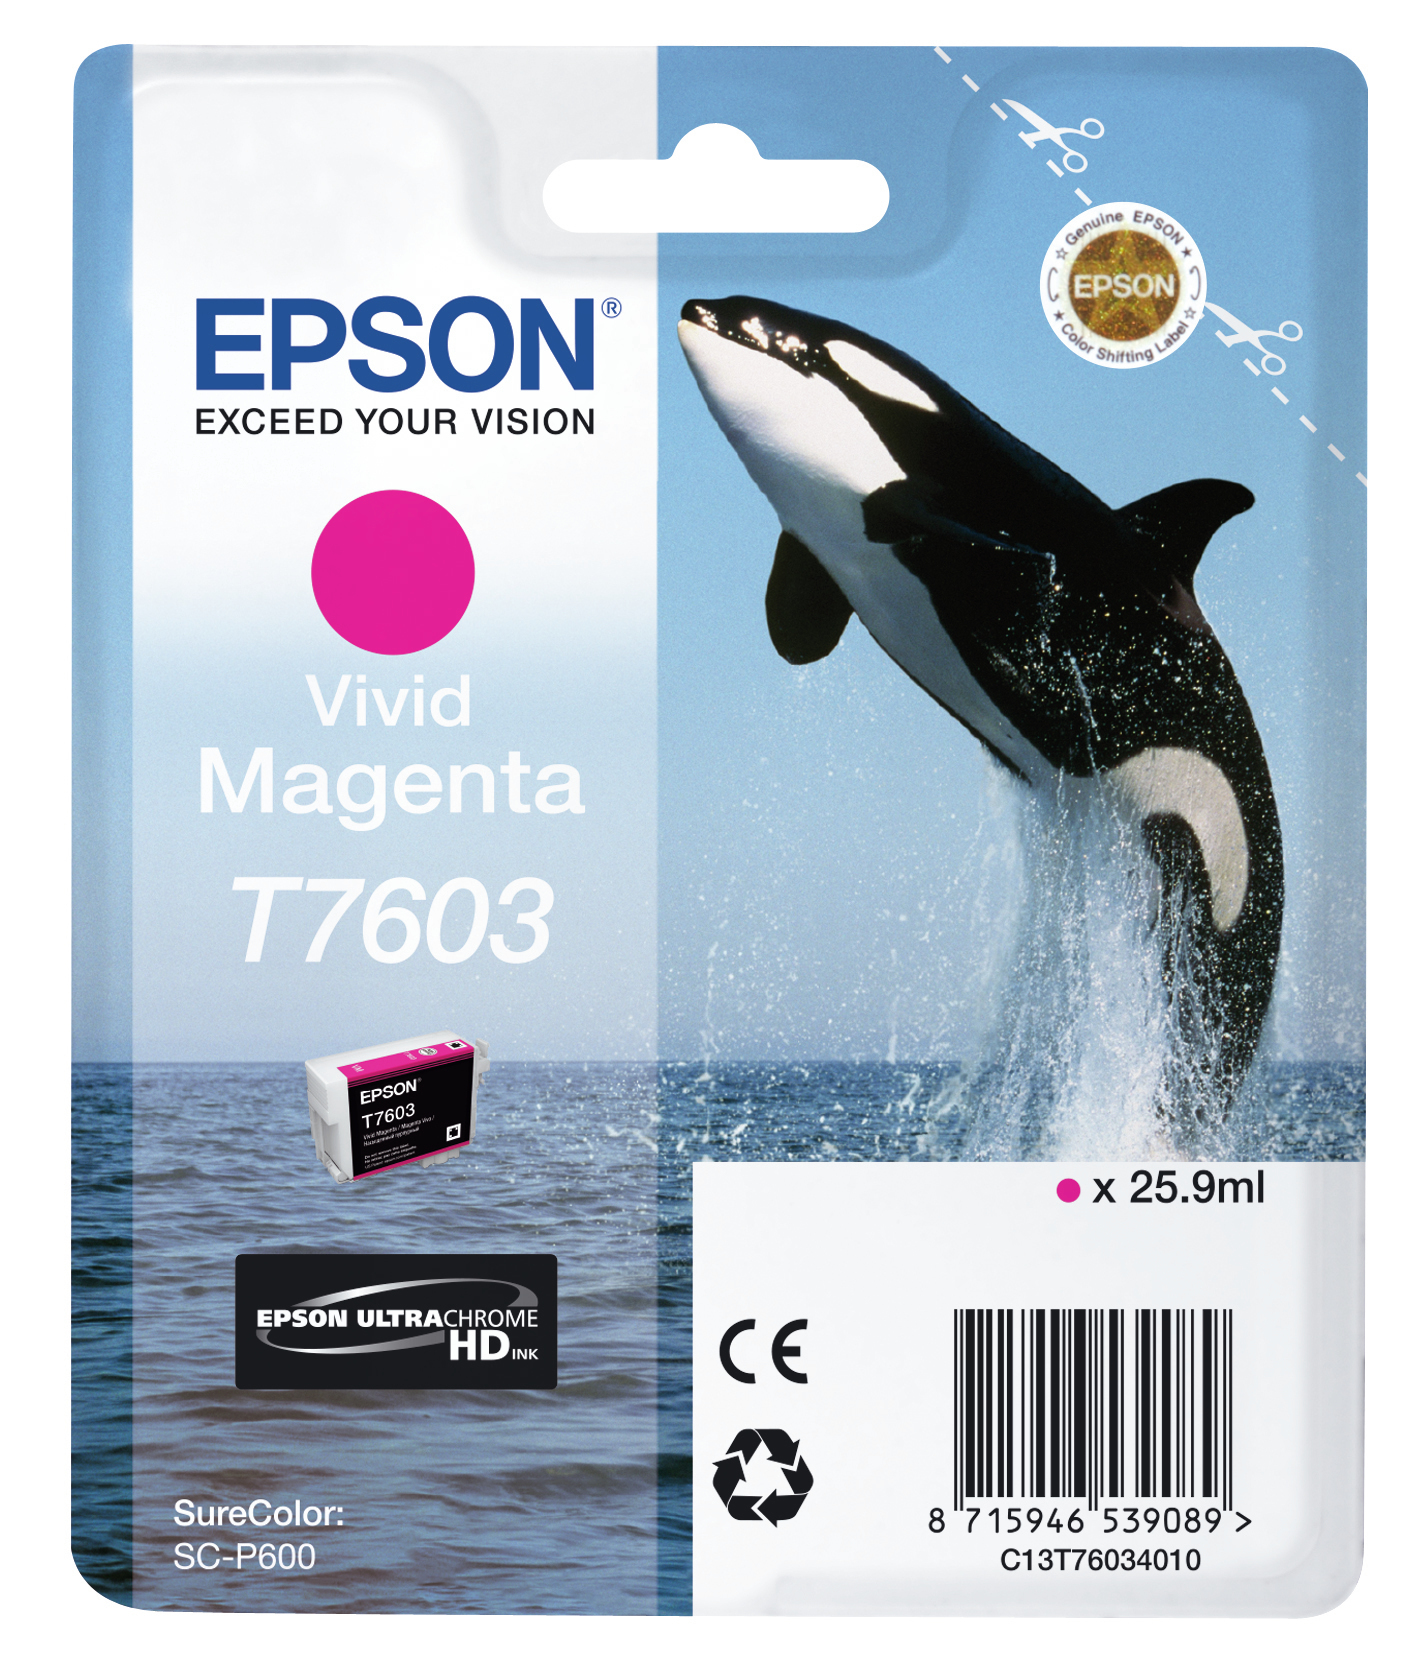 Epson T7603